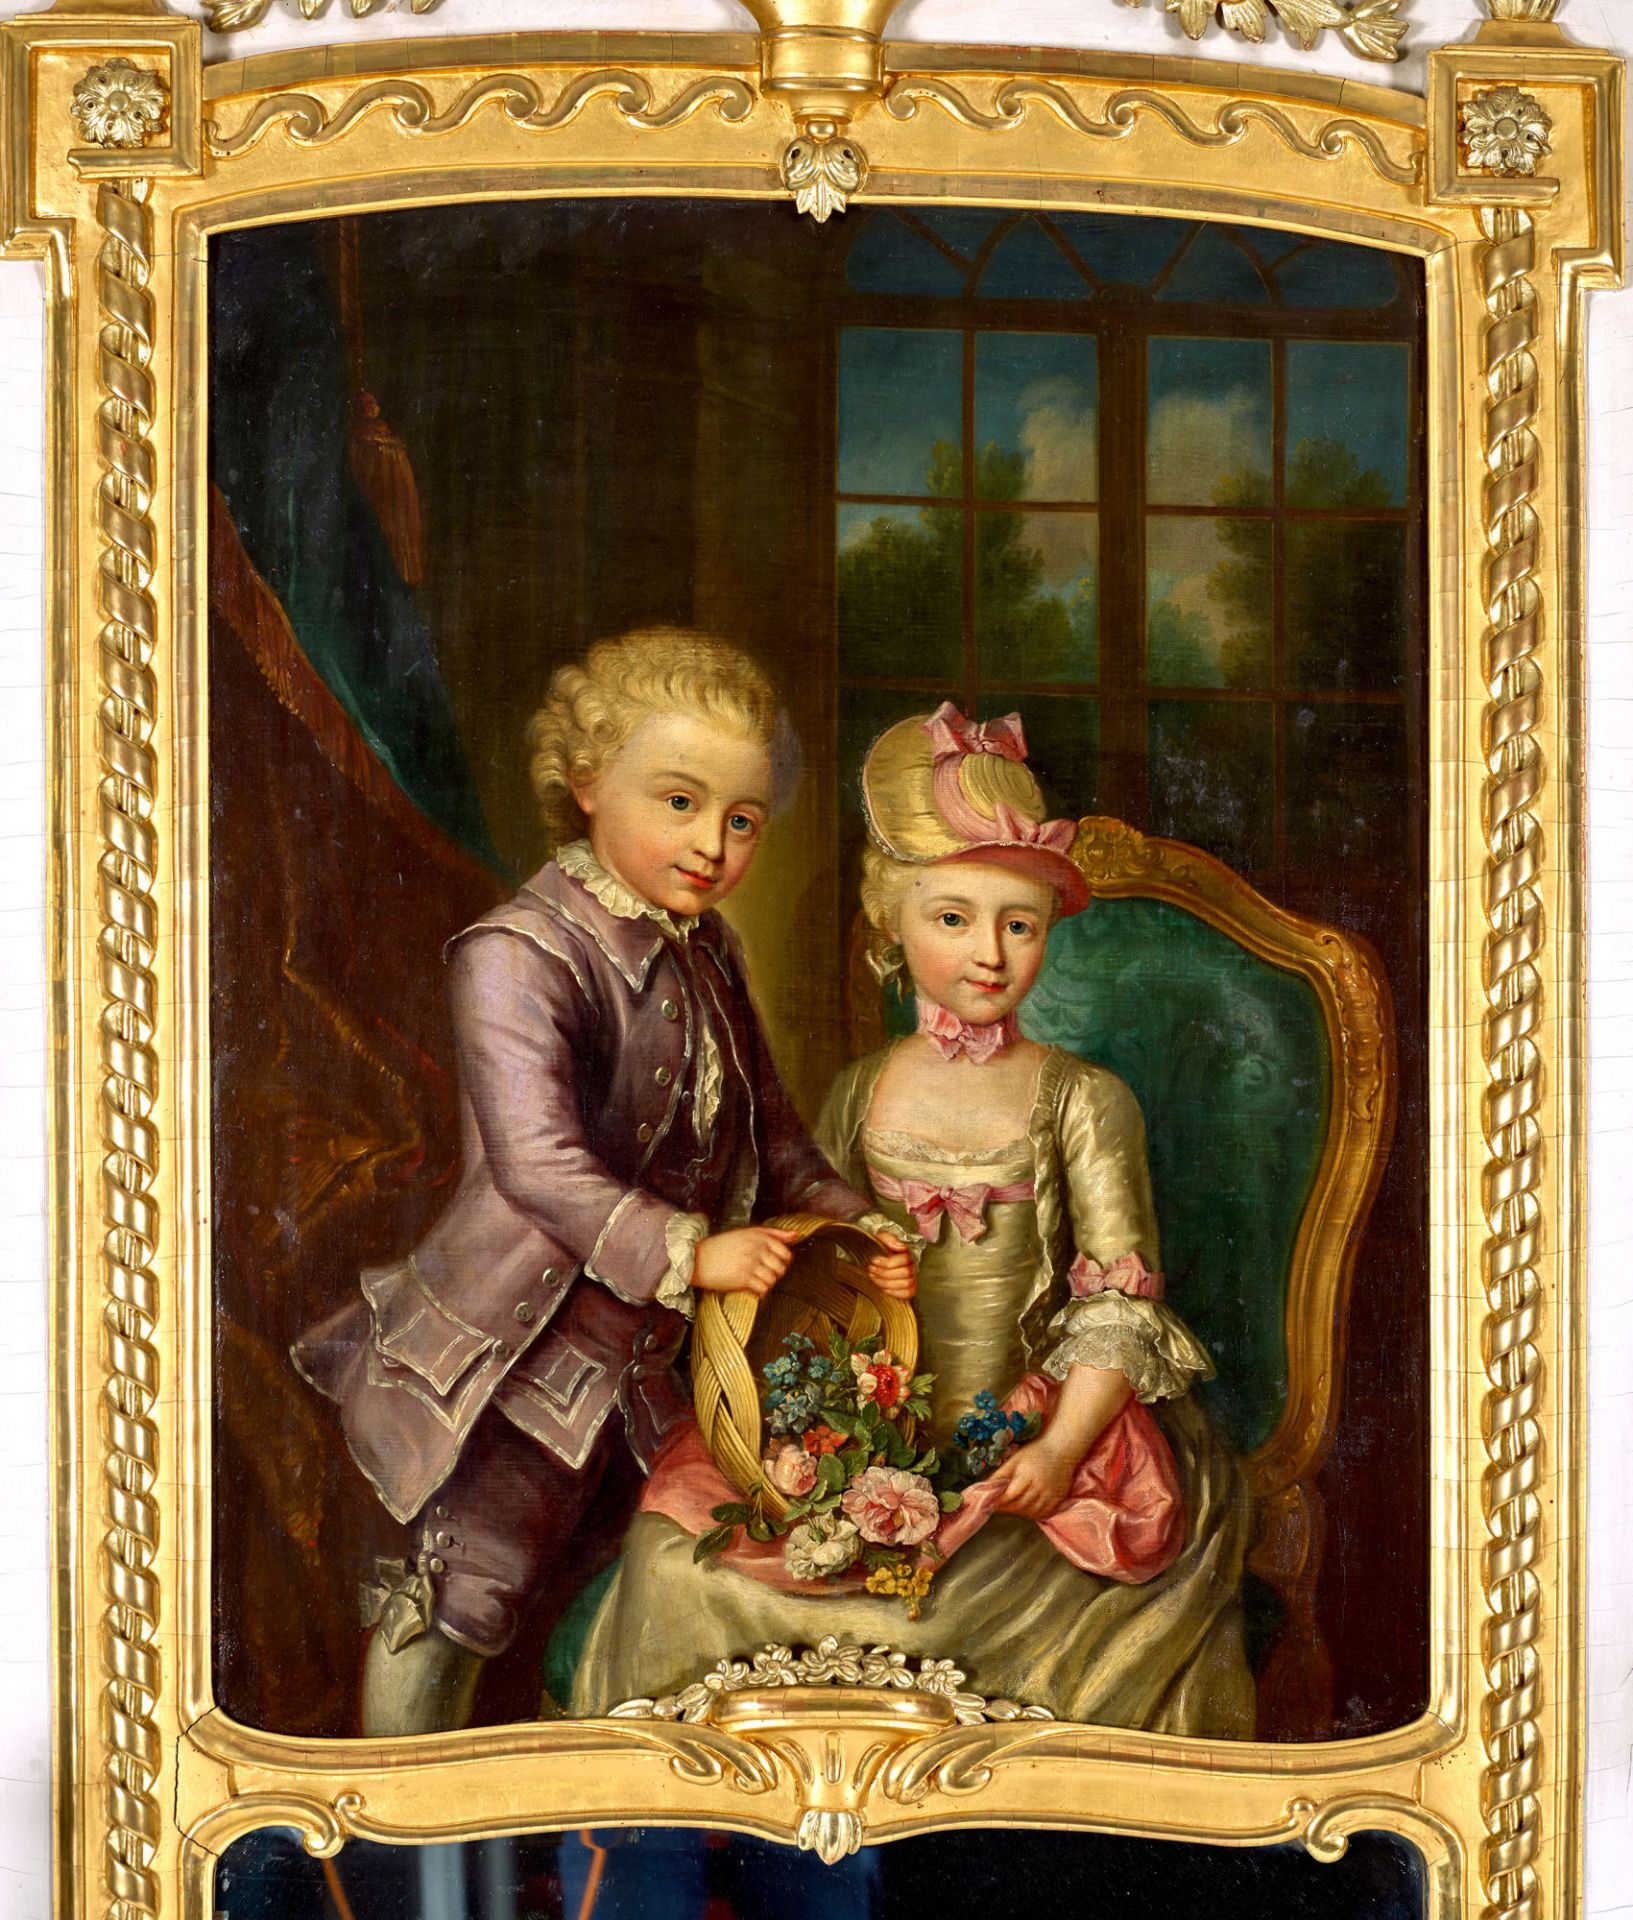 ABERLI, JOHANN LUDWIG: Trumeauspiegel mit Bildnis eines vornehmen Kinderpaares. - Image 2 of 2